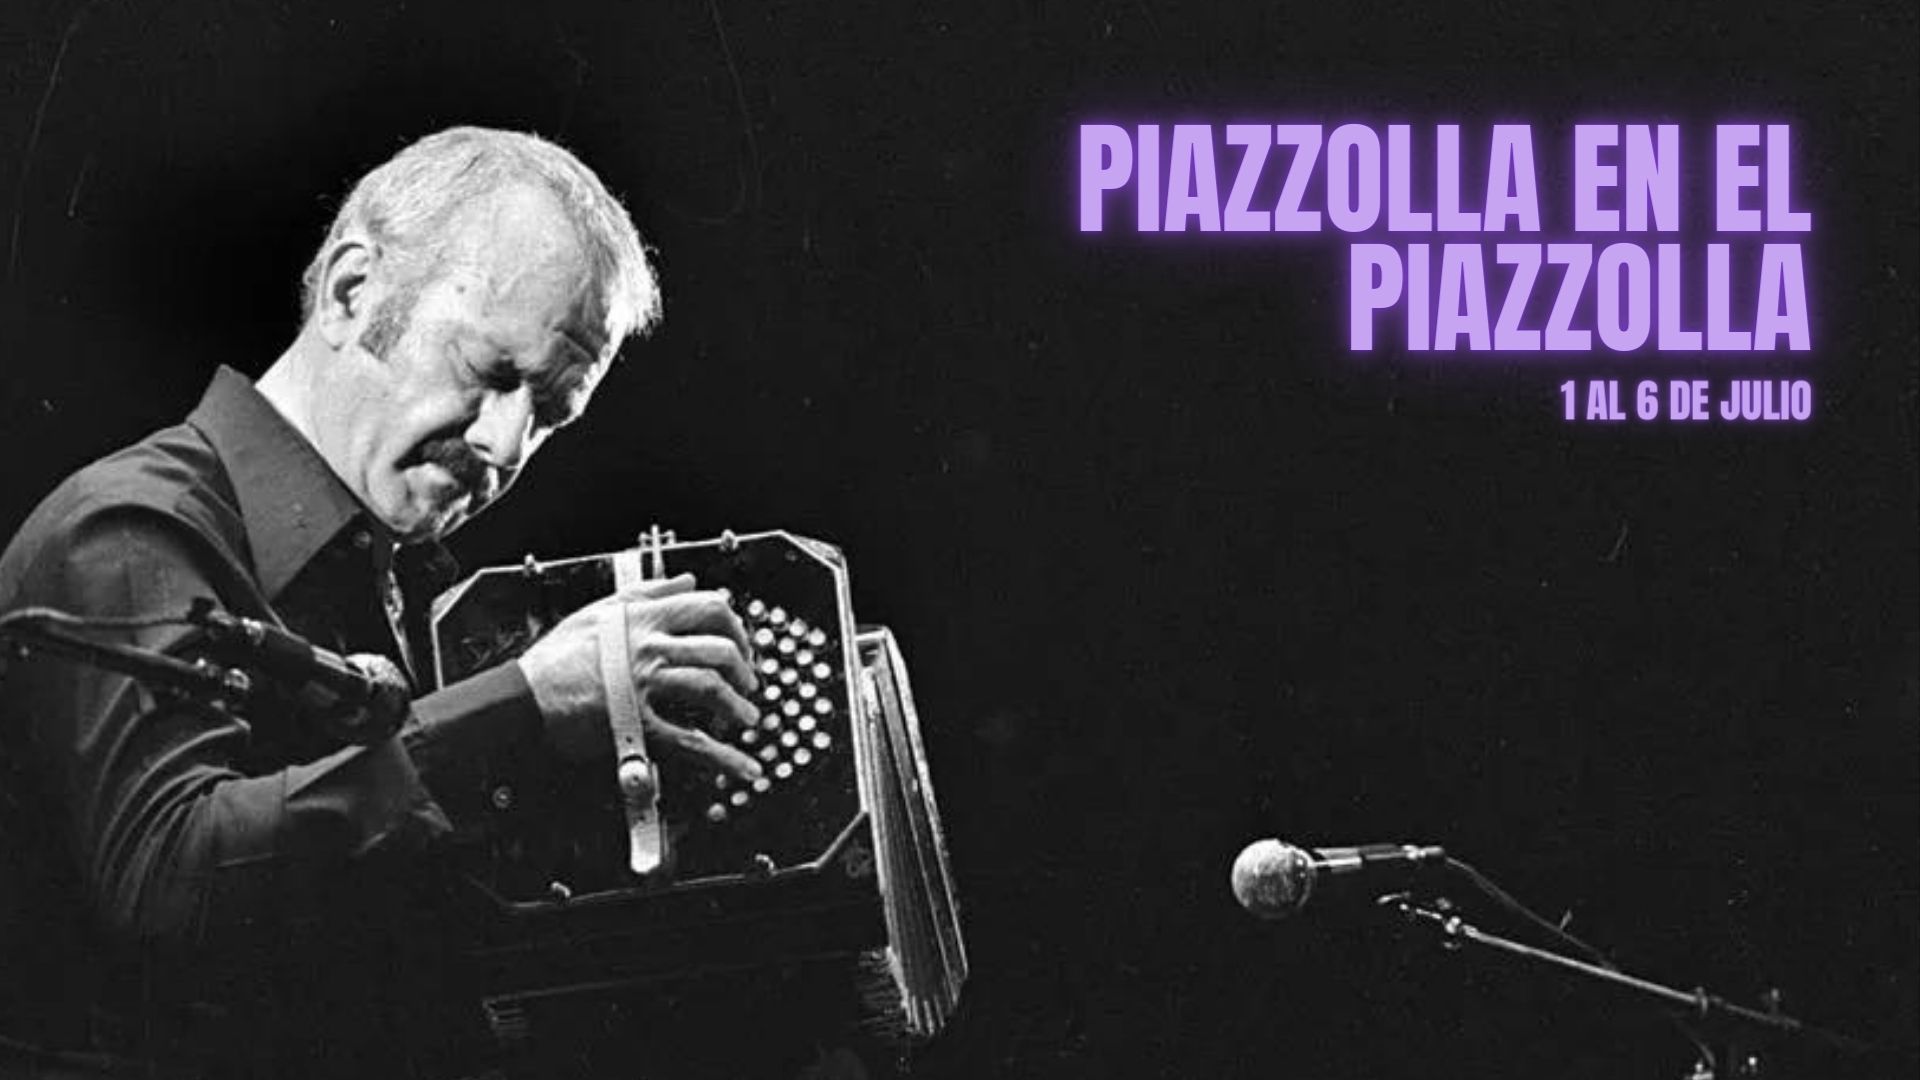 “Piazzolla en el Piazzolla”